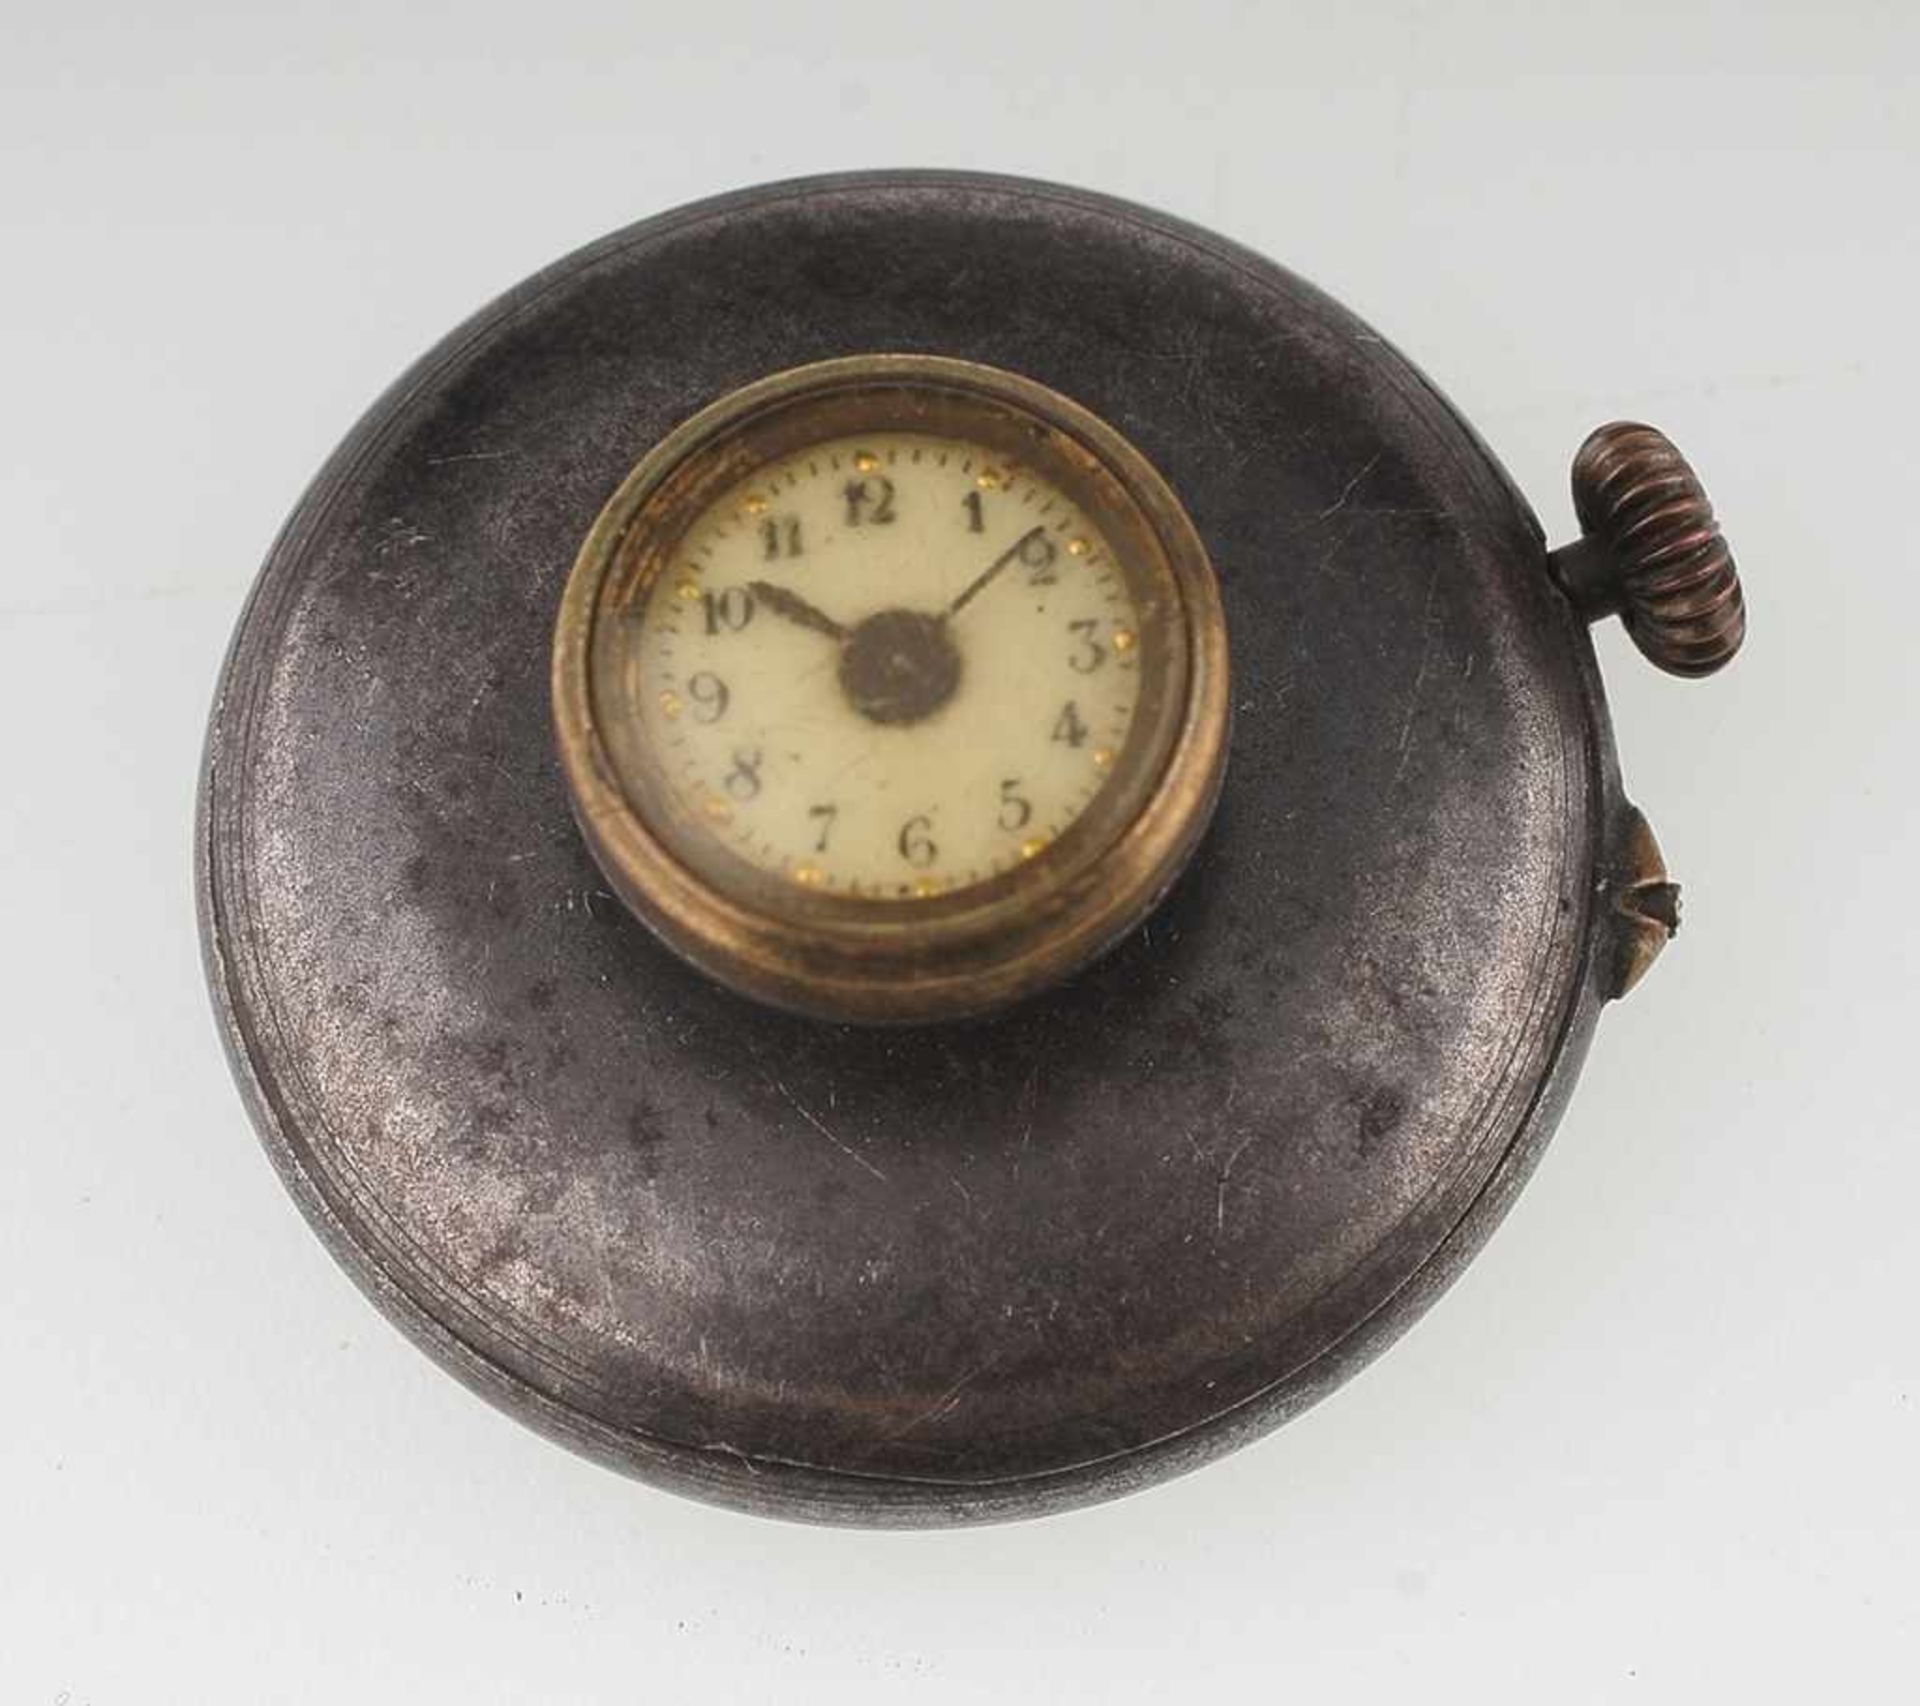 Knopfloch-Uhr Brüniertes Stahlgehäuse mit aufgesetzter Uhr. Zifferblatt mit arabischen Ziffern.